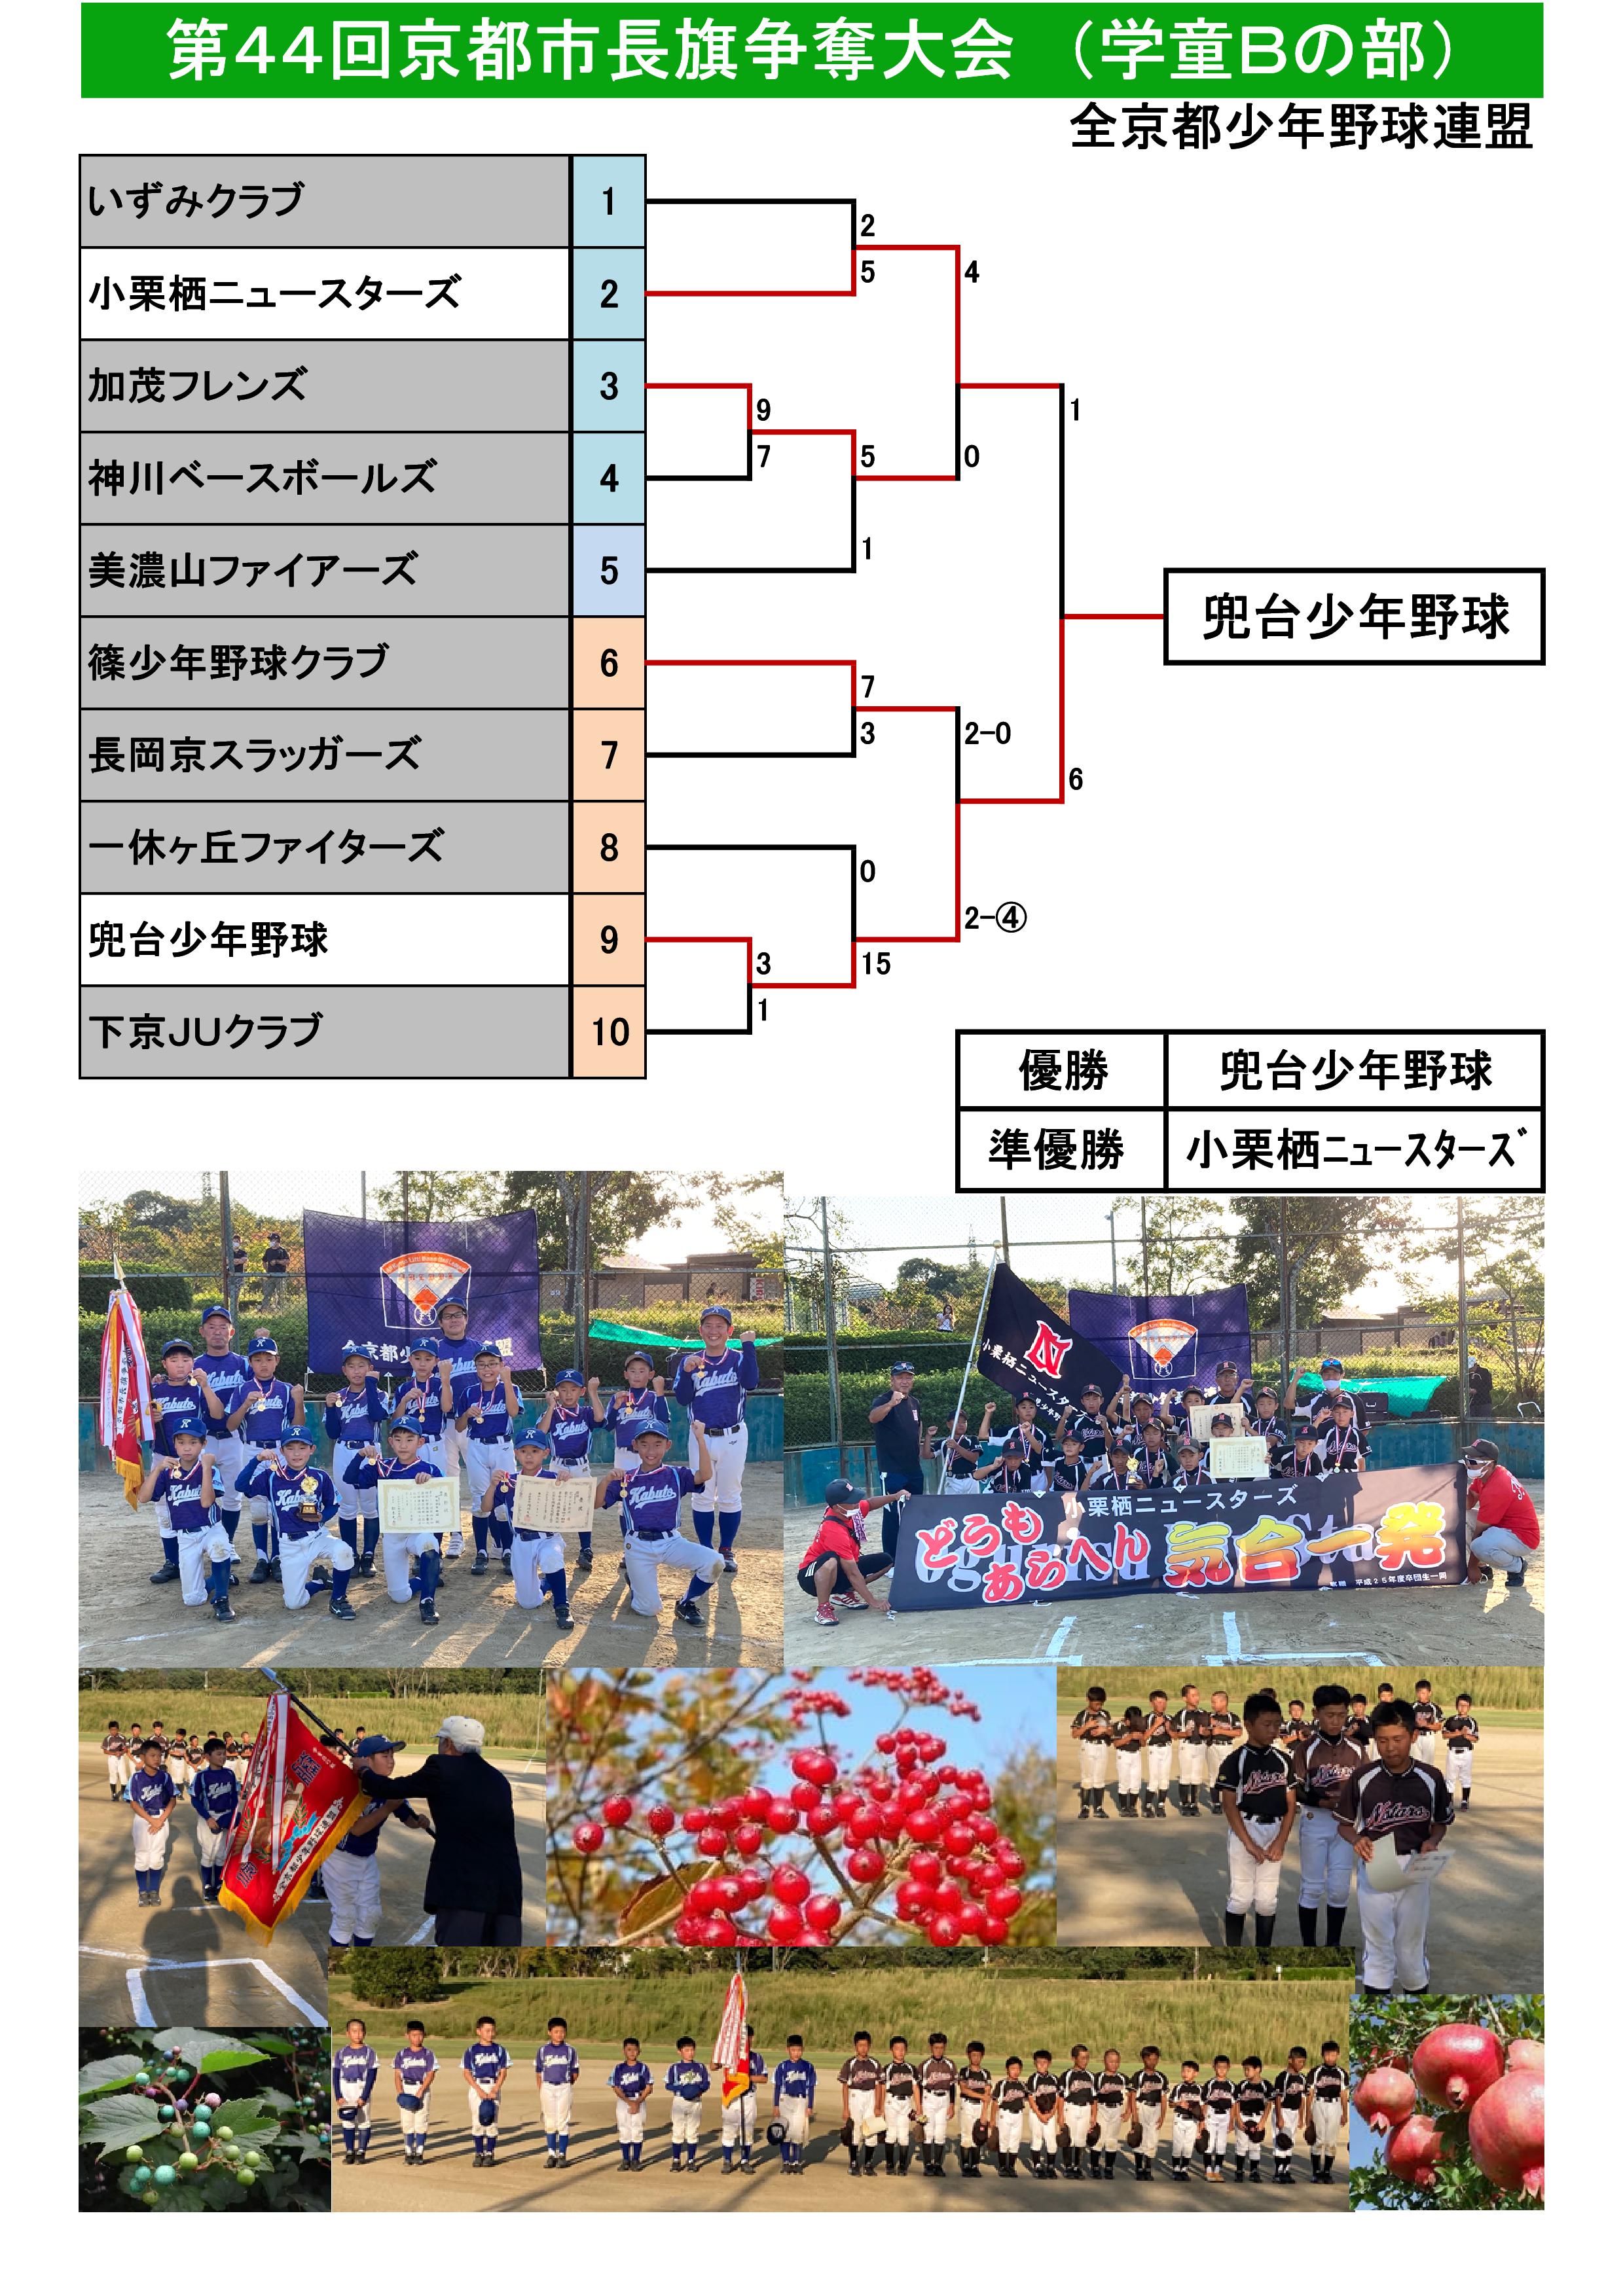 44回京都市長旗トーナメント表 (2021.3.7～).jpg